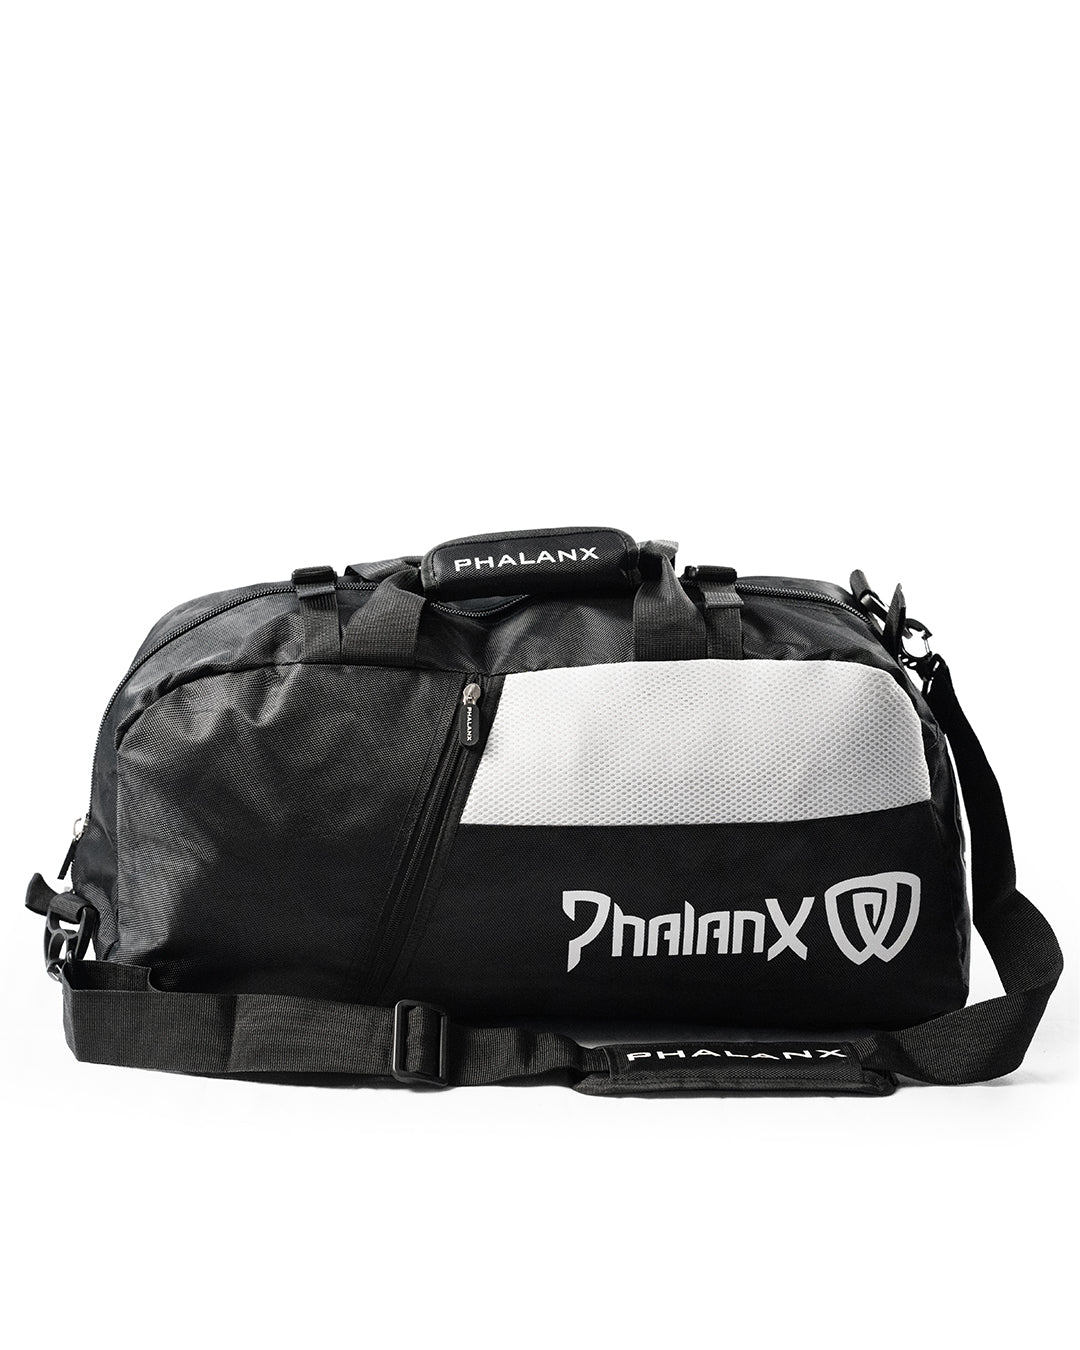 Phalanx jiu jitsu gear bag for BJJ and MMA gear, perfect for No Gi Jiu Jitsu or Brazilian Jiu-Jitsu and Mixed Martial Arts gear - all grappling and wrestling plus surfing and yoga gear!